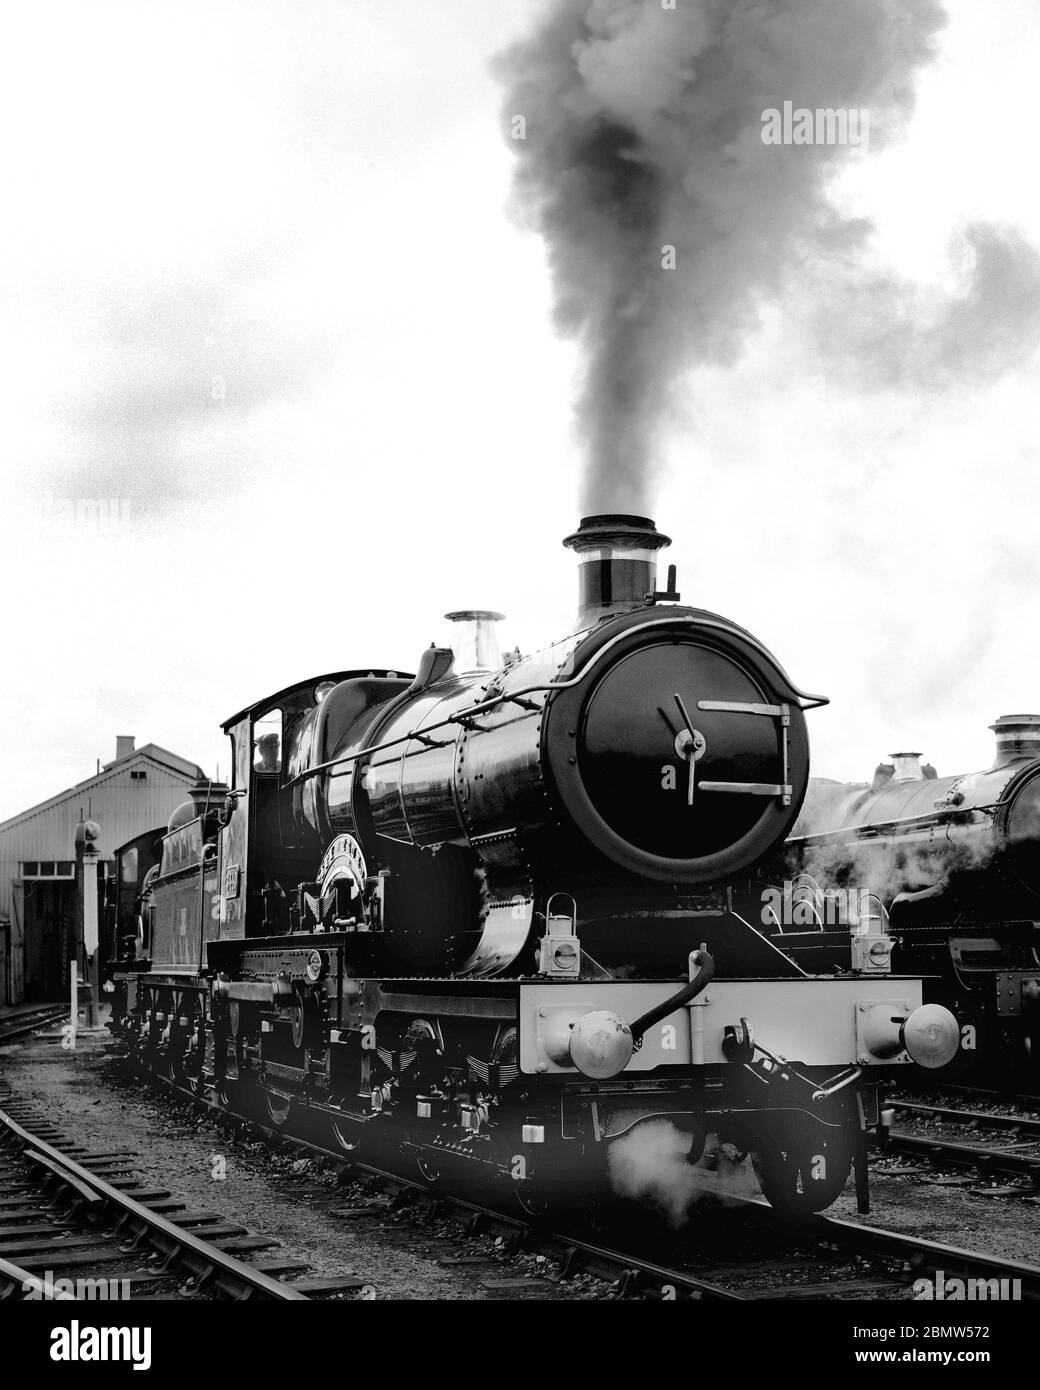 GWR 3700 classe locomotive à vapeur No. 3717 ville de Truro photographiée à vapeur à Didcot, Wiltshire, Angleterre, Royaume-Uni Banque D'Images